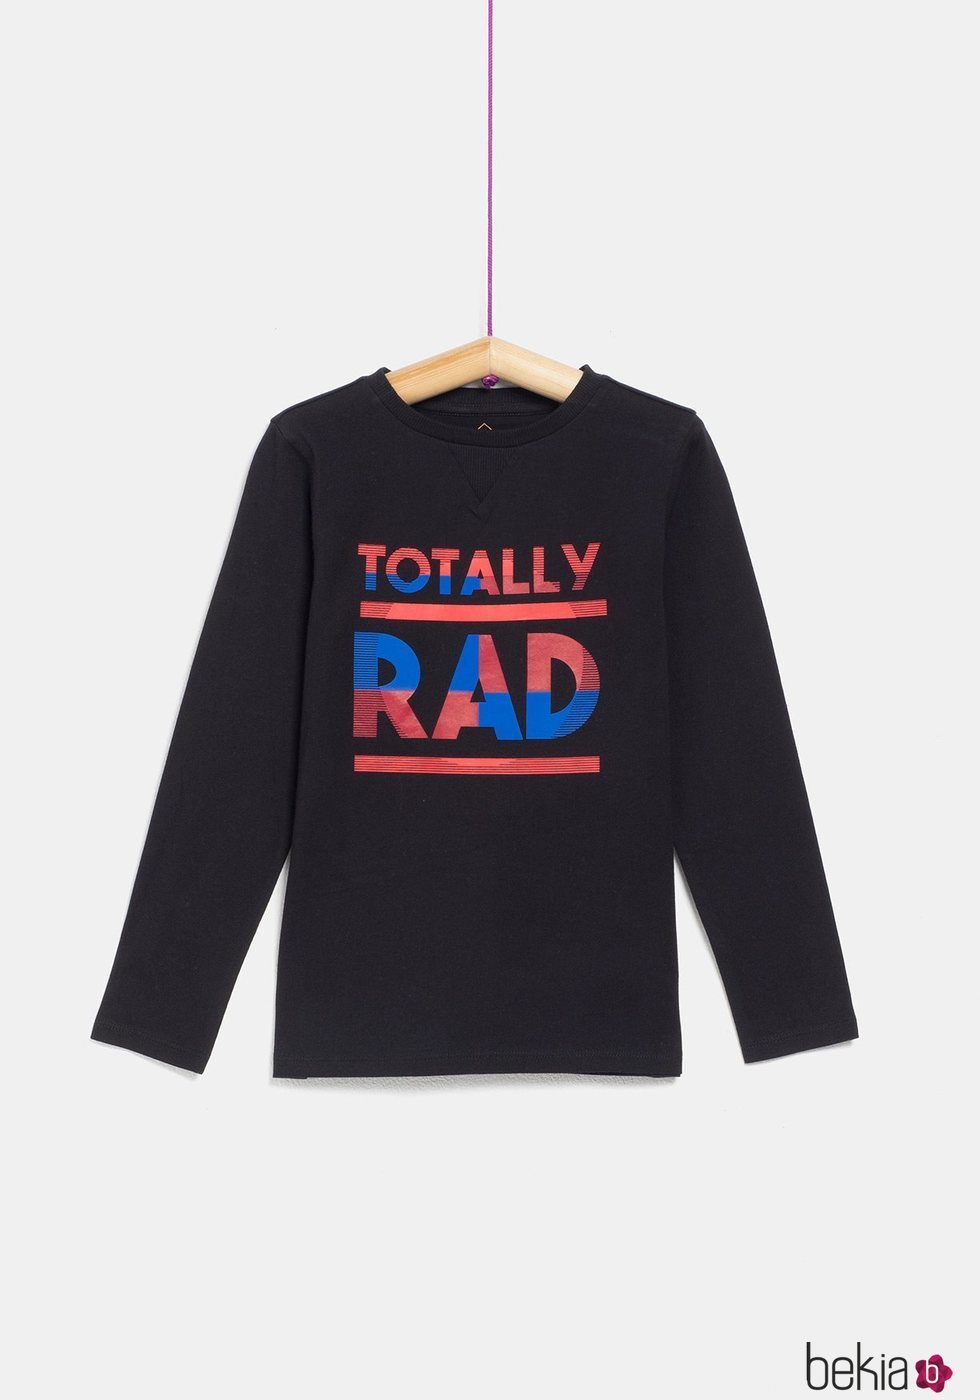 Camiseta negra 'Totally Rad' de niño de la colección 'I-O' de Carrefour y TEX para otoño/invierno 2019